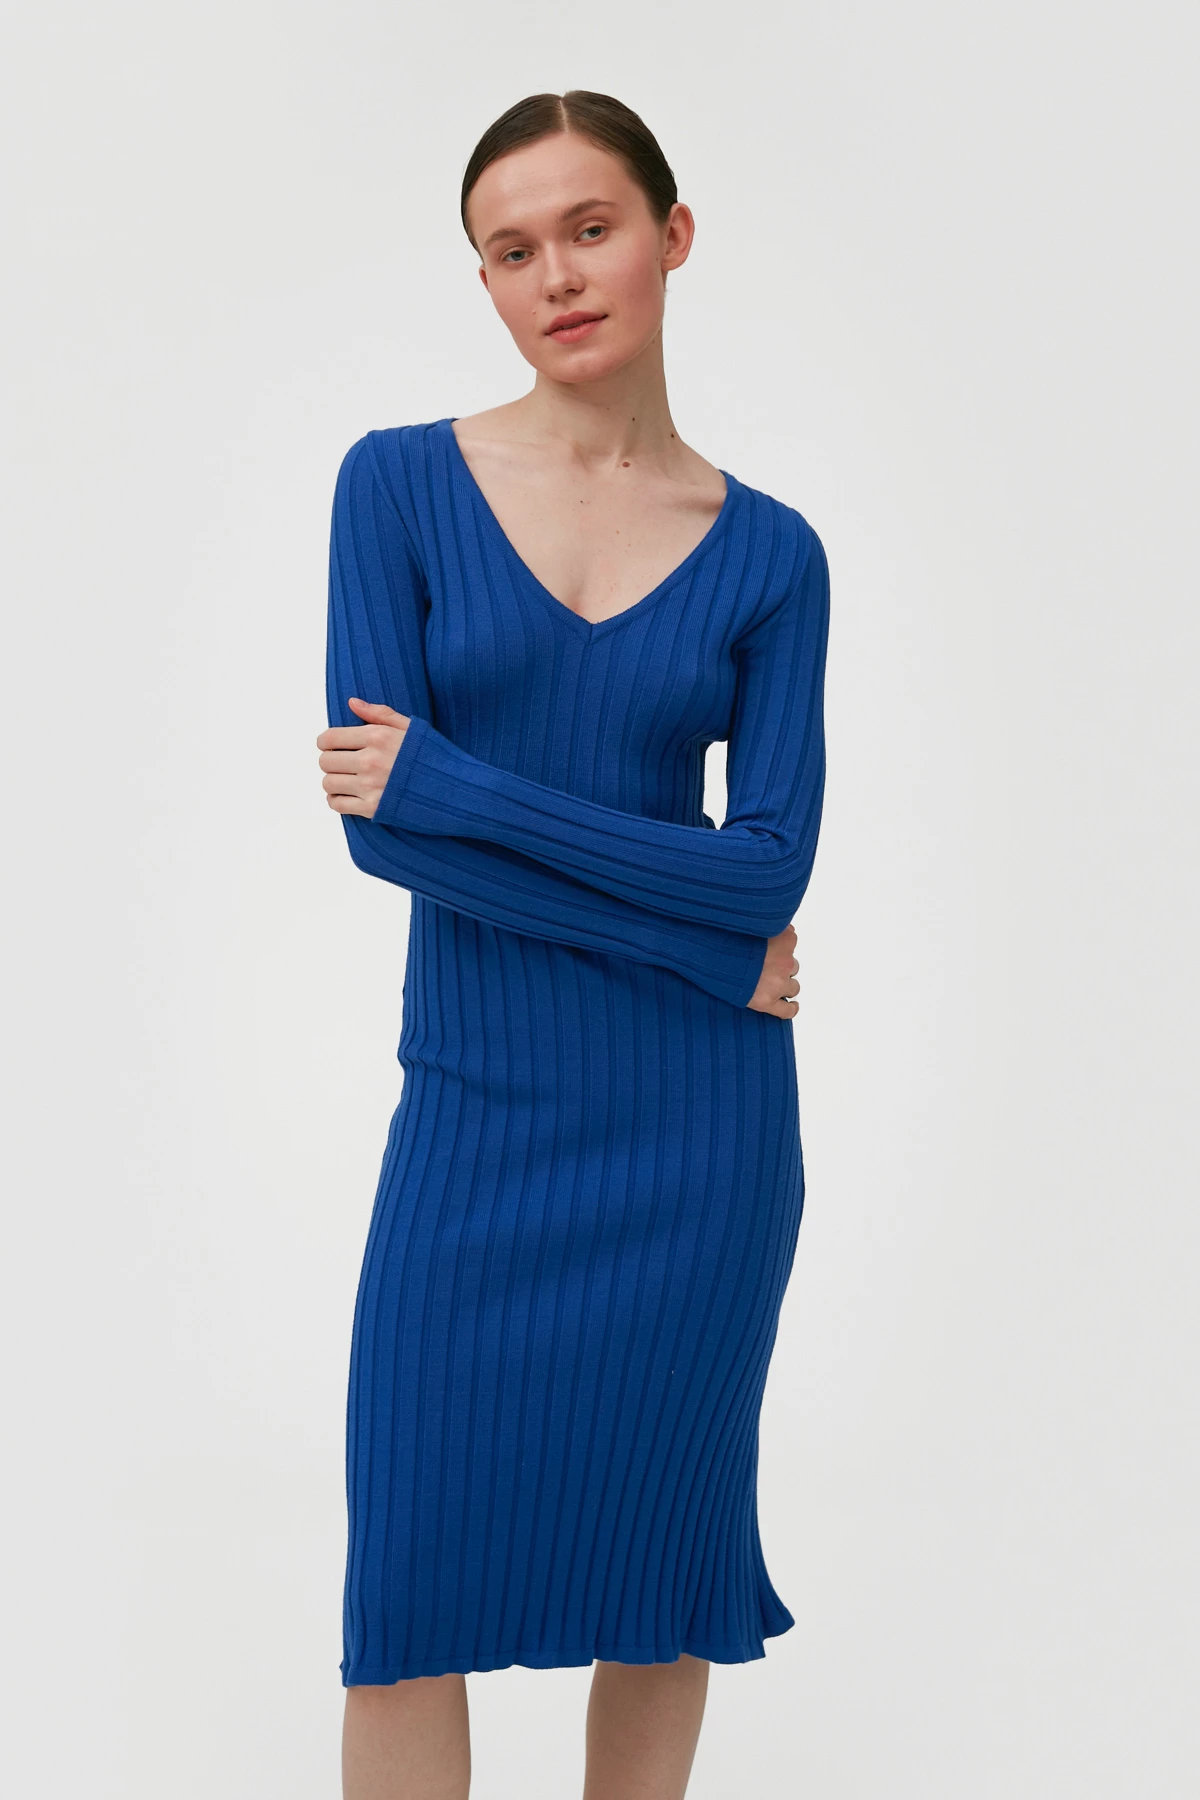 Синее вязаное платье ниже колена в широкий рубчик с вискозой, фото 1